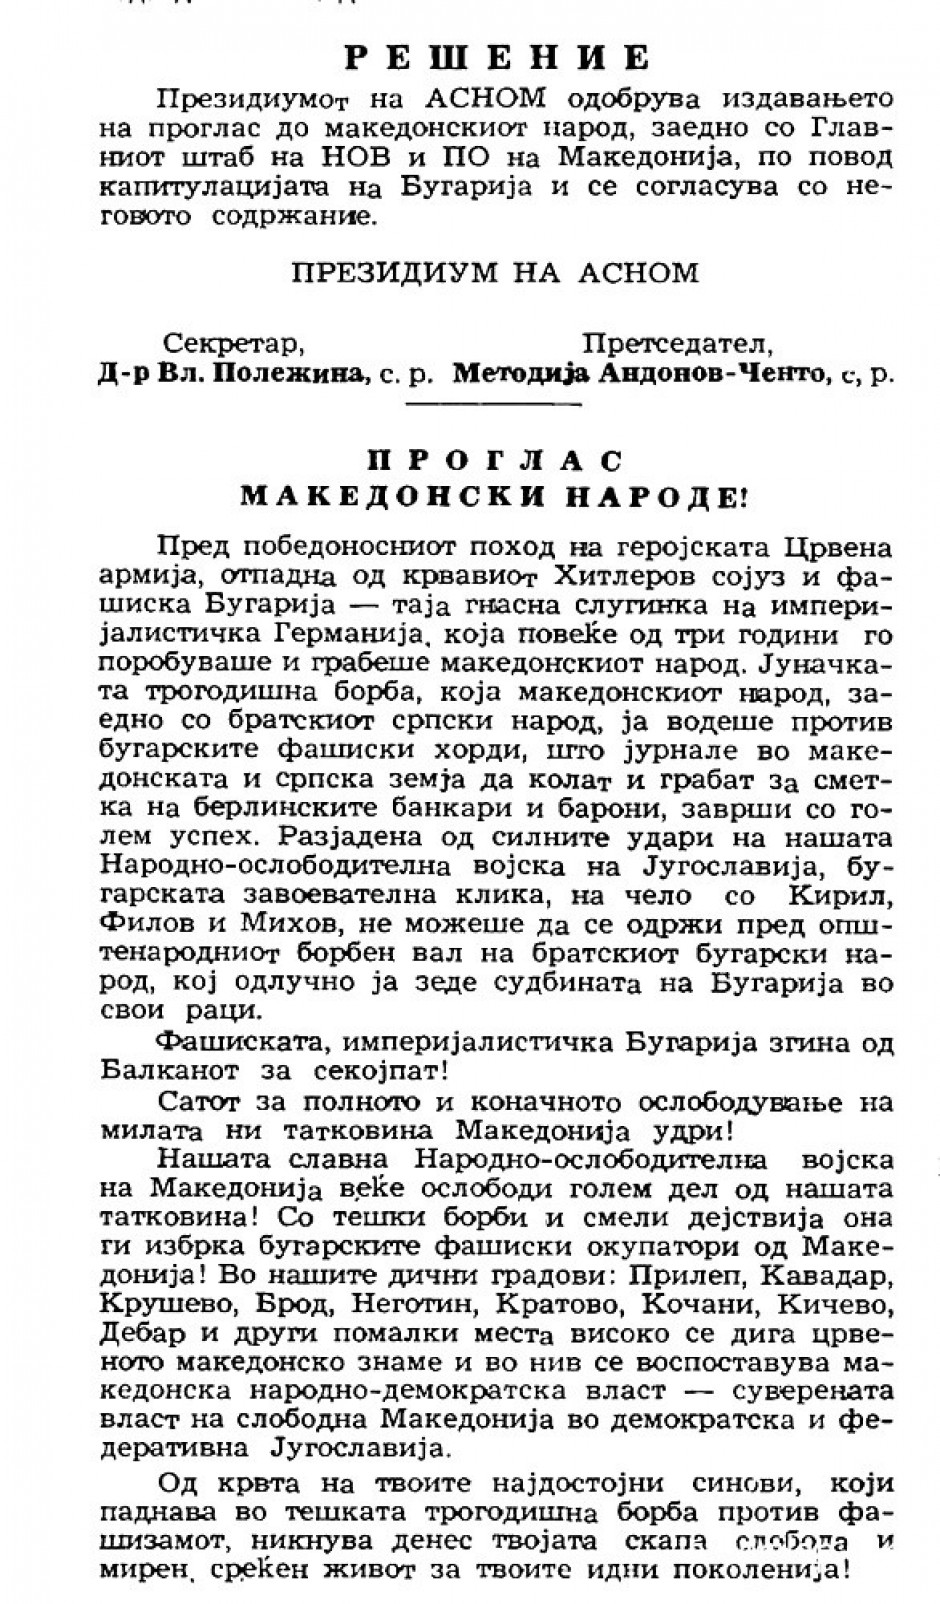 Септември 1944: Проглас по повод капитулацијата на бугарија